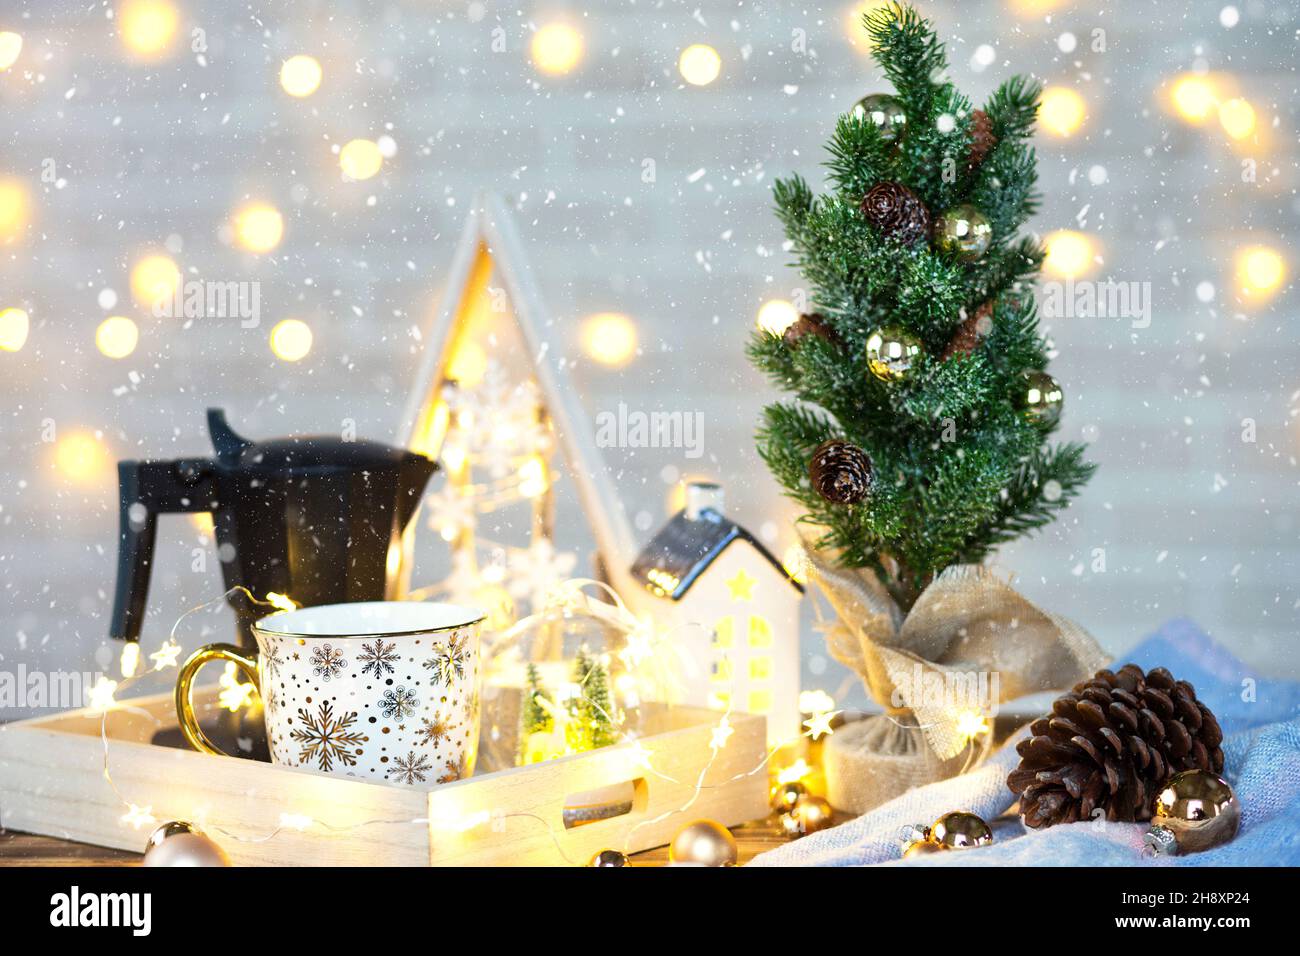 Décoration de Noël sur la table avec une tasse et une cafetière.Arbre de Noël, plateau - petit-déjeuner du matin du nouvel an avec lumières de fées et verres. Banque D'Images